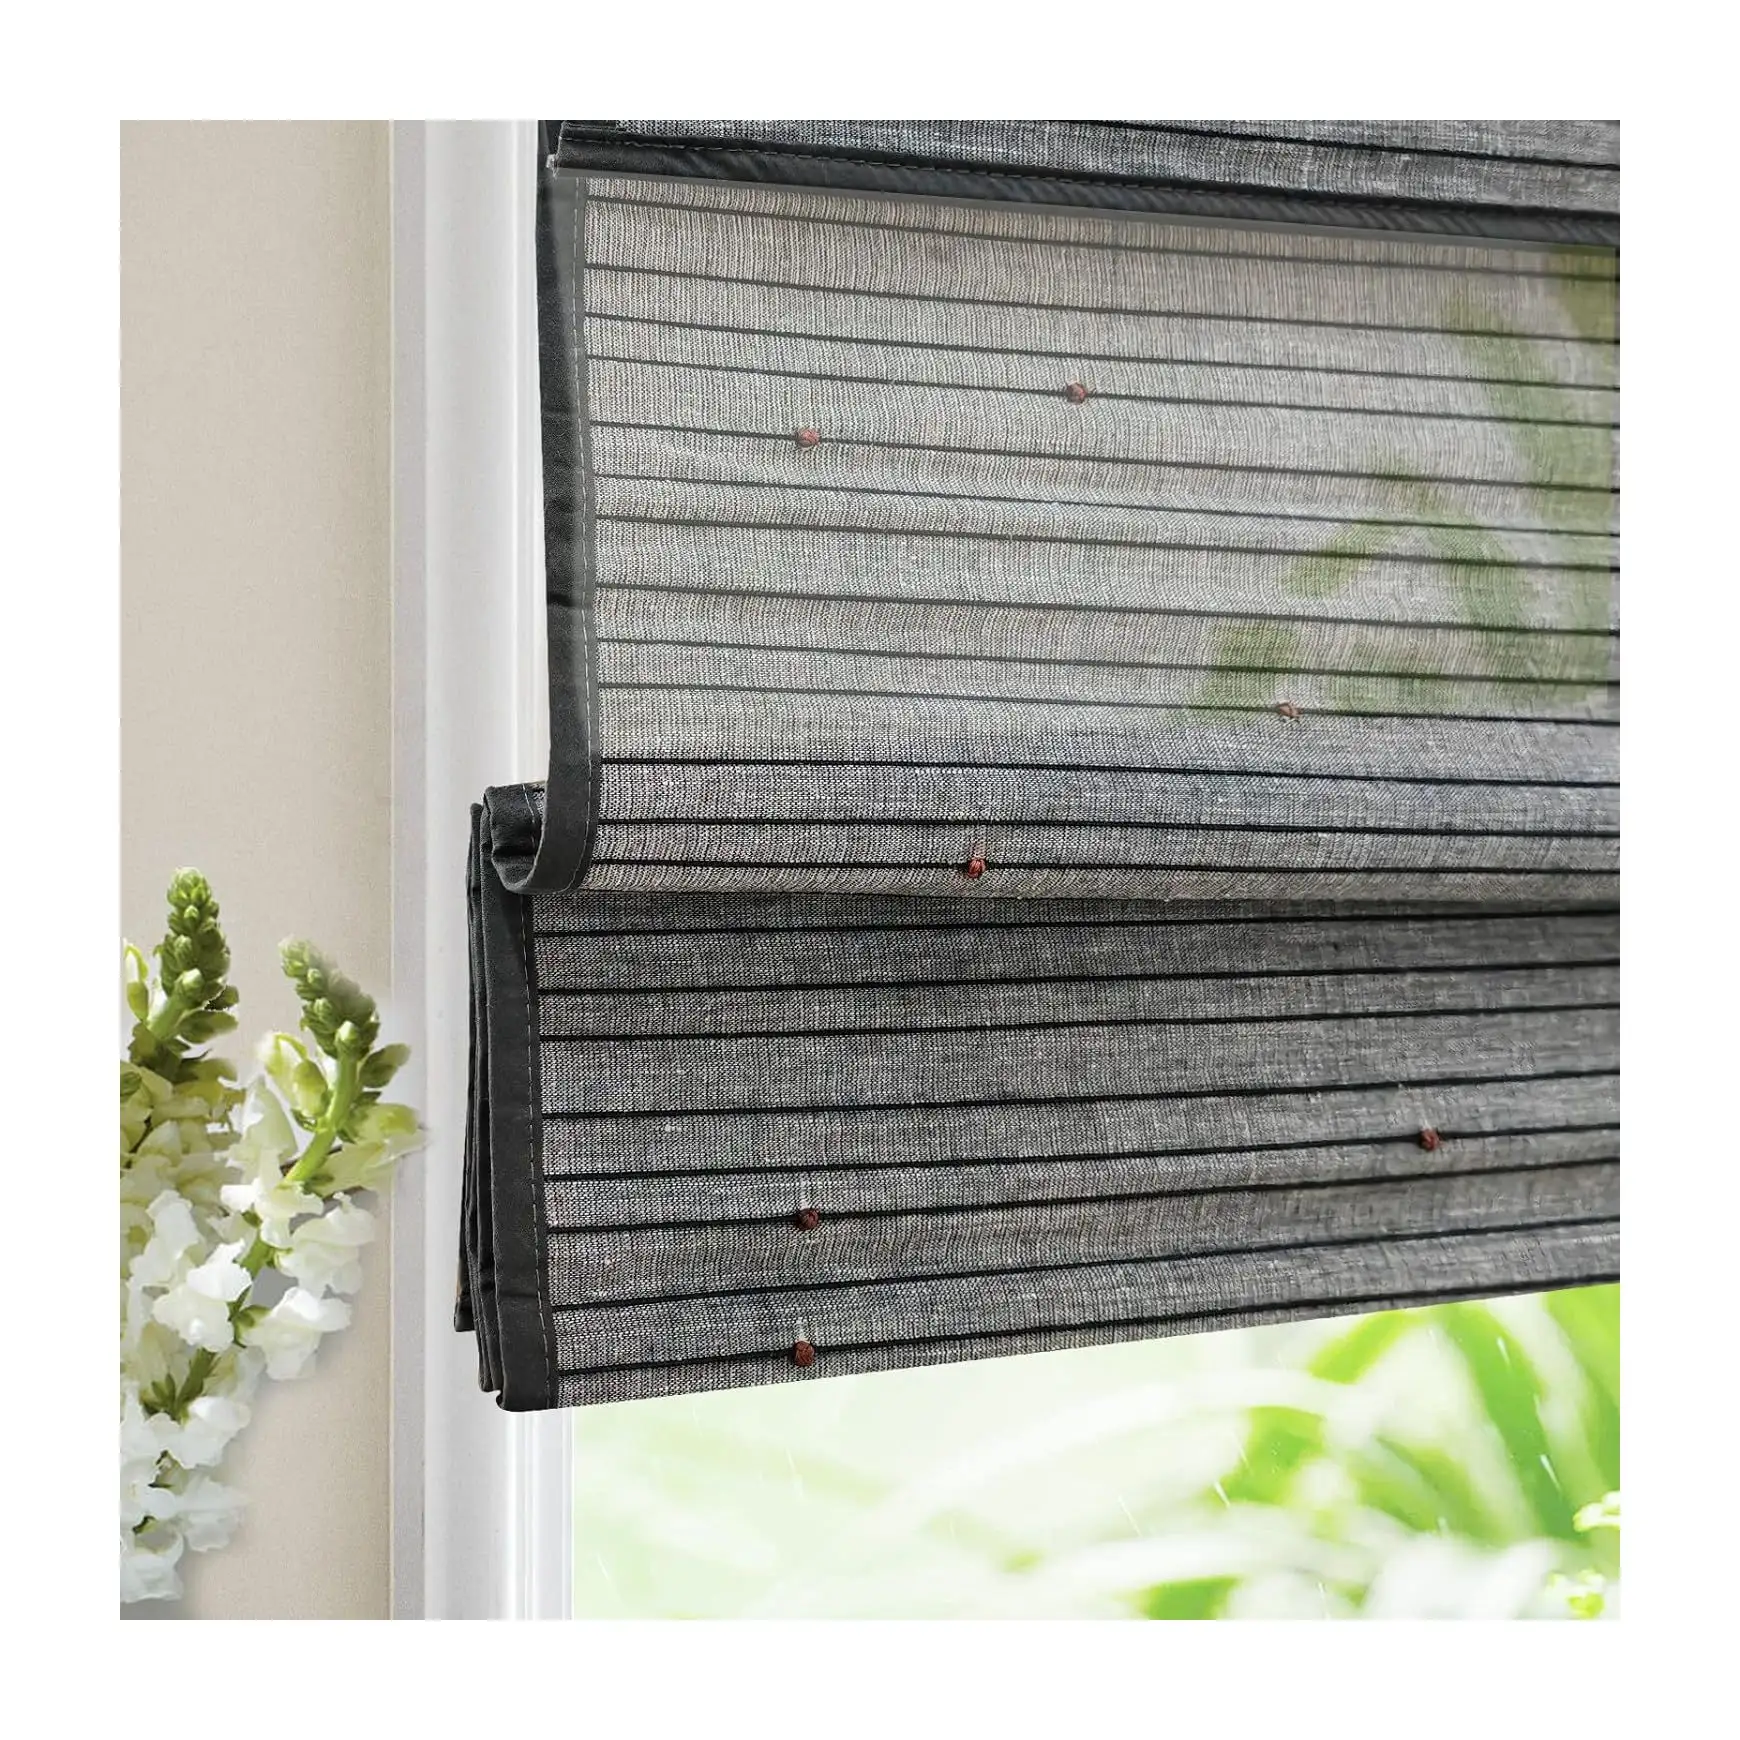 Finestra a rullo oscurante pulcino di bambù acceca veneziana ombreggiatura verticale intelligente nero tapparelle di bambù per finestra